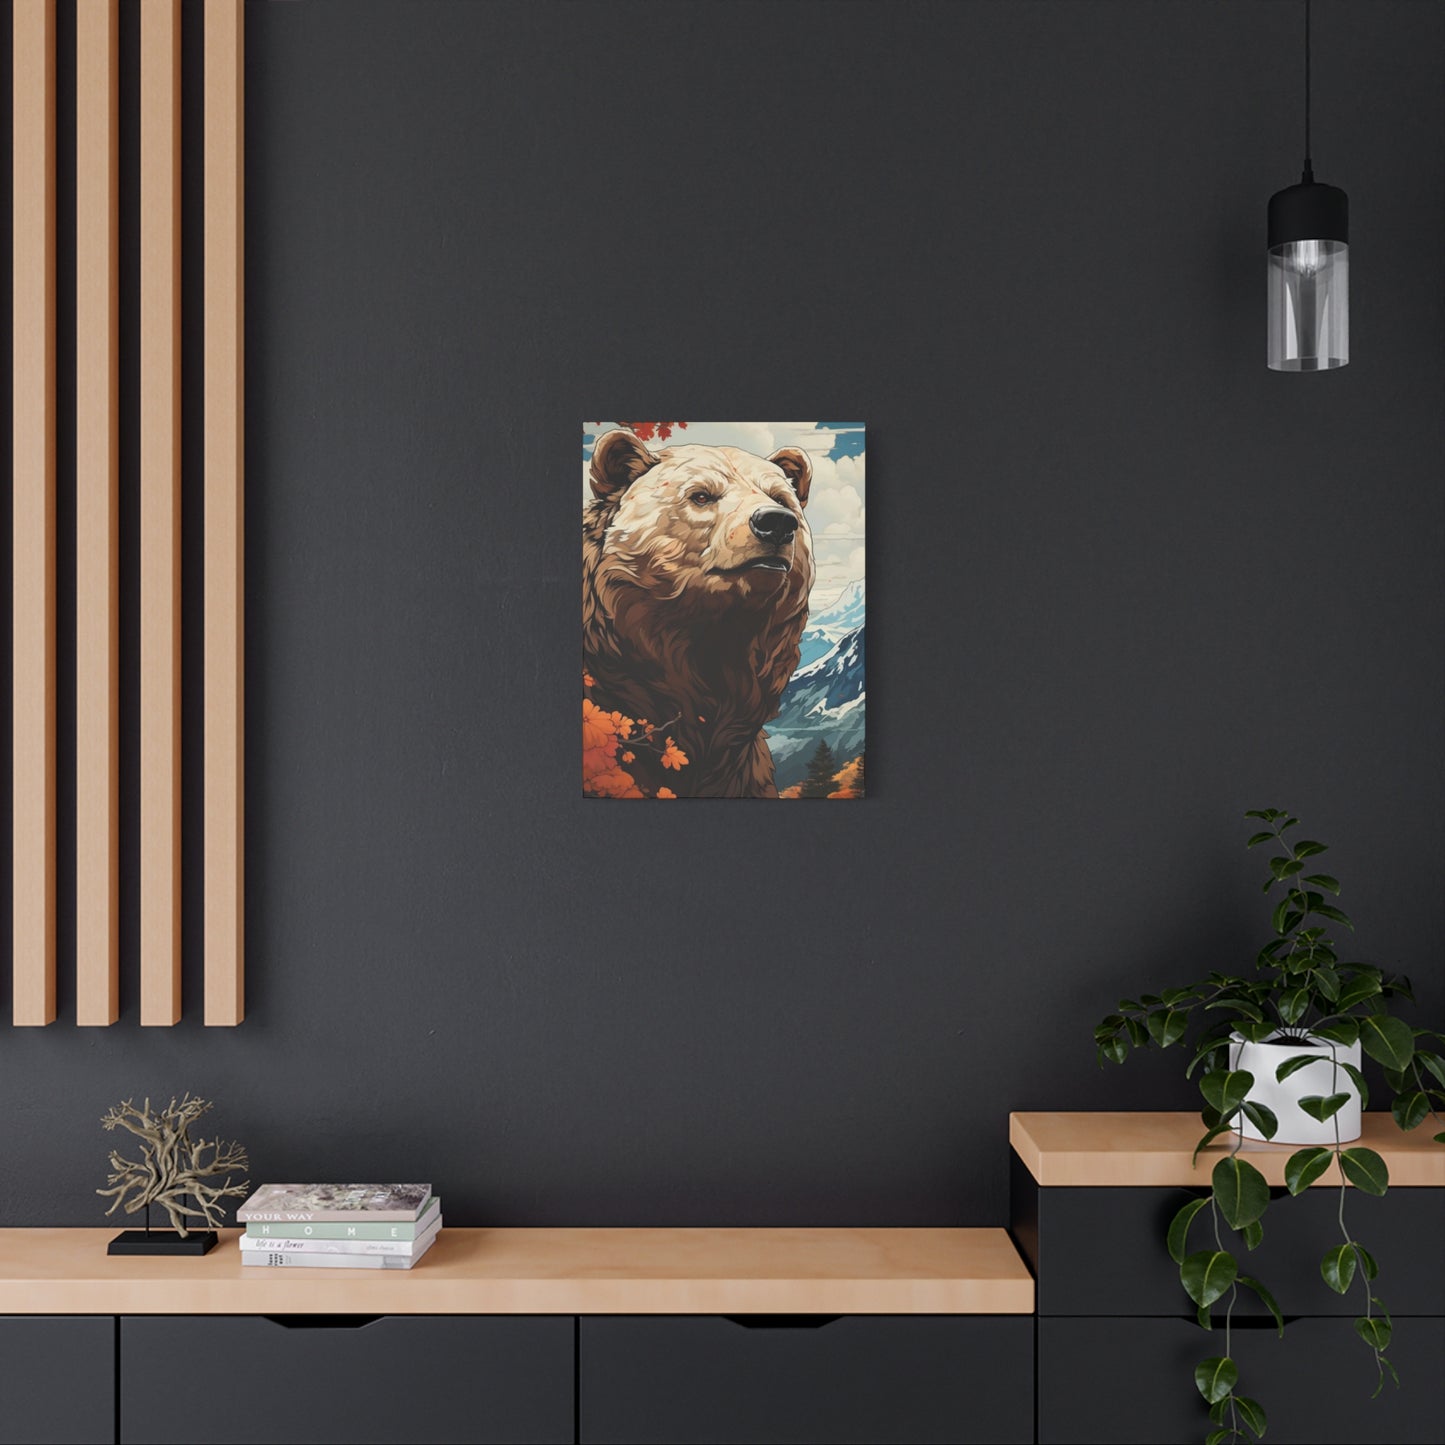 Bear Wall Art & Canvas Prints